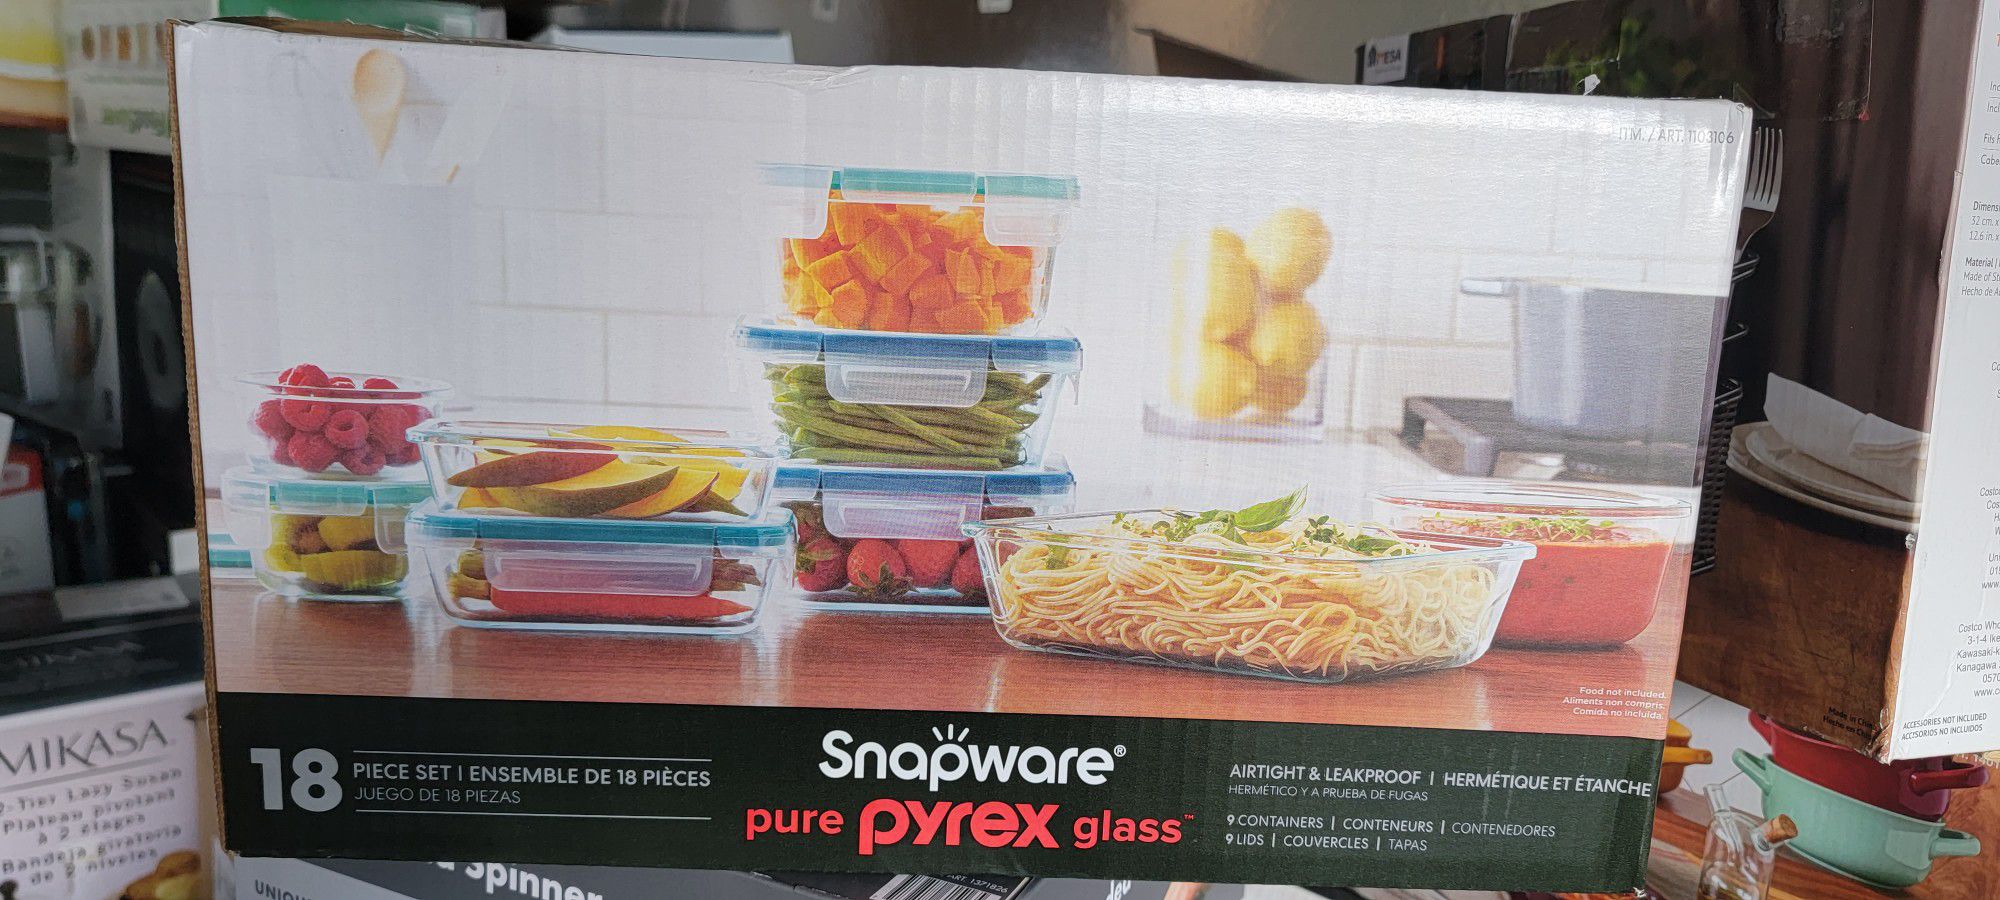 Snapware Pyrex 18 Piece Glass Food Storage Set